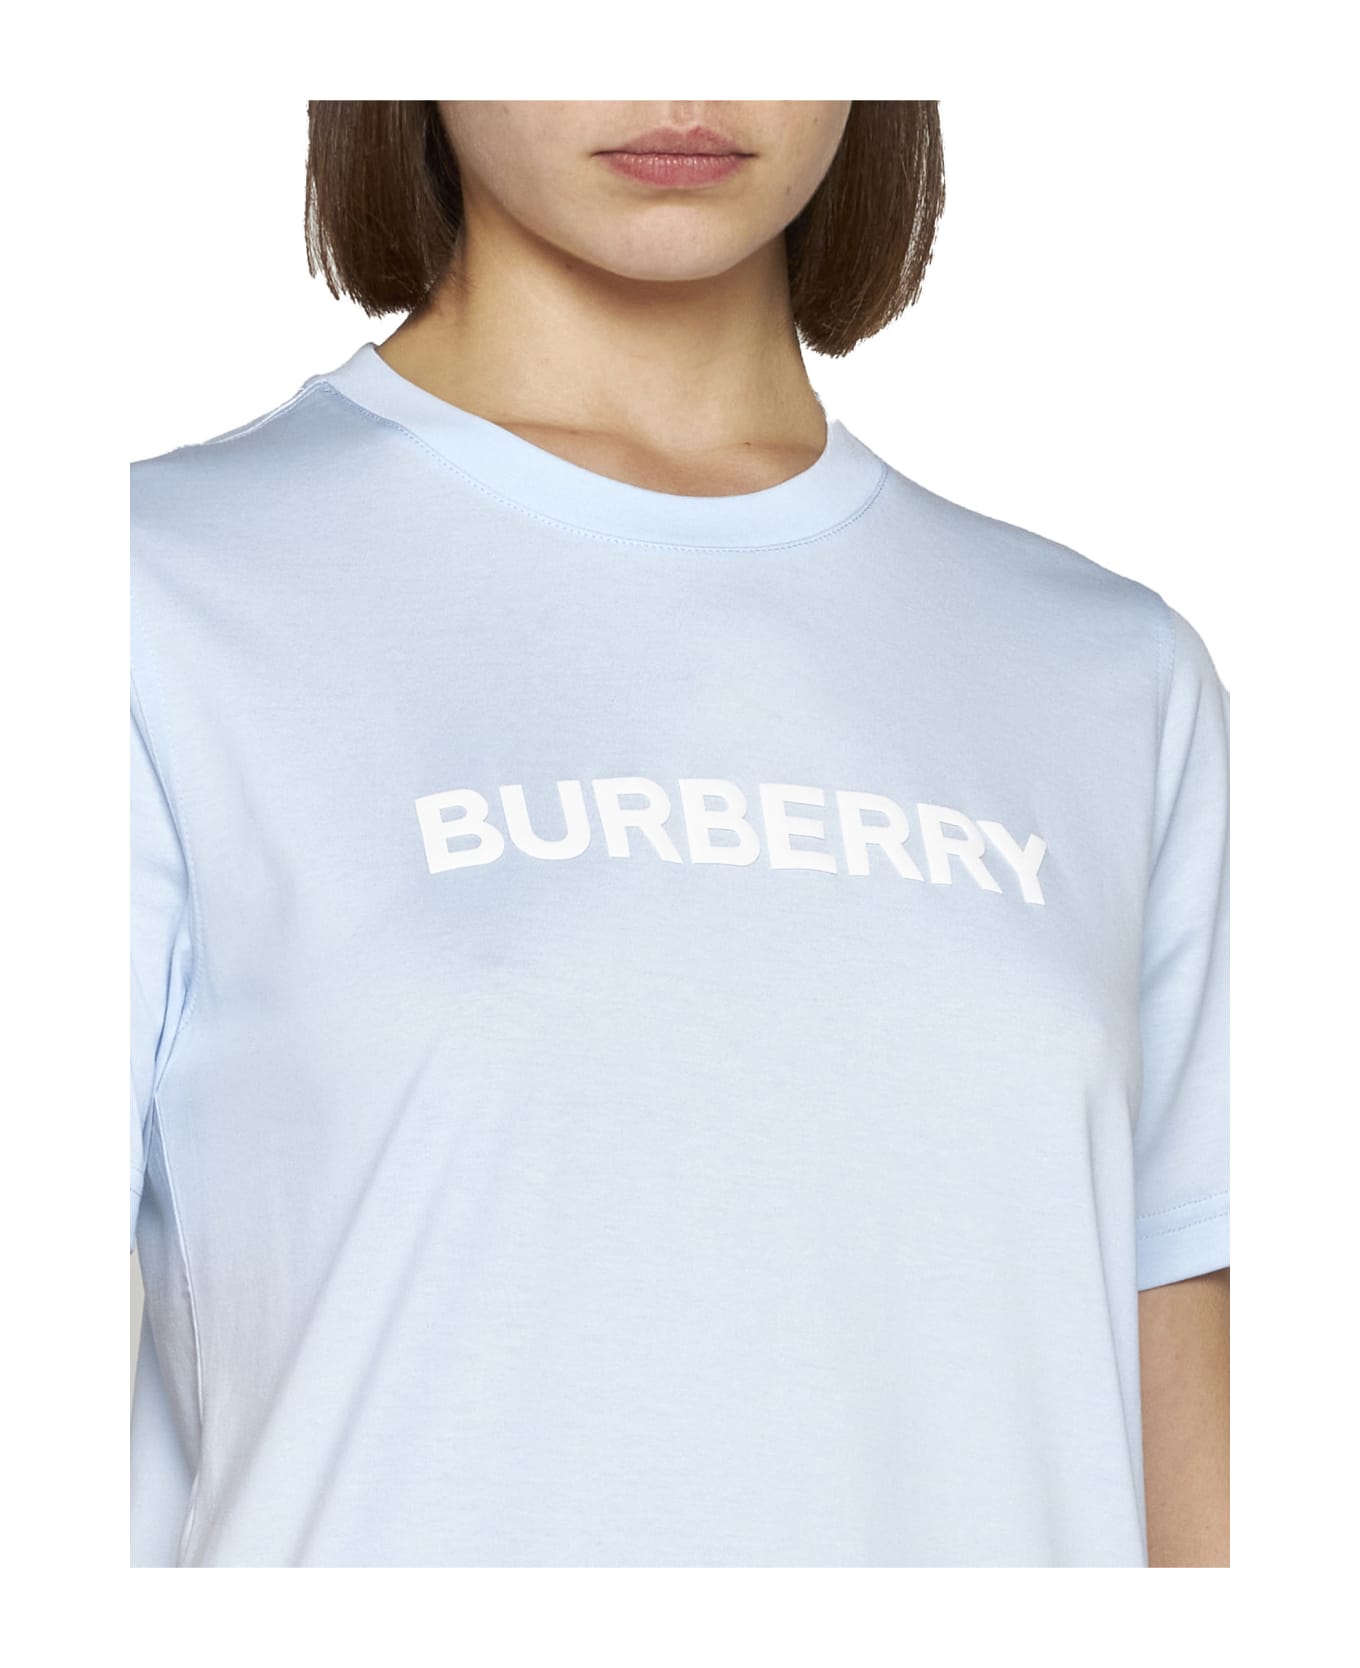 Burberry T-Shirt - Pale blue